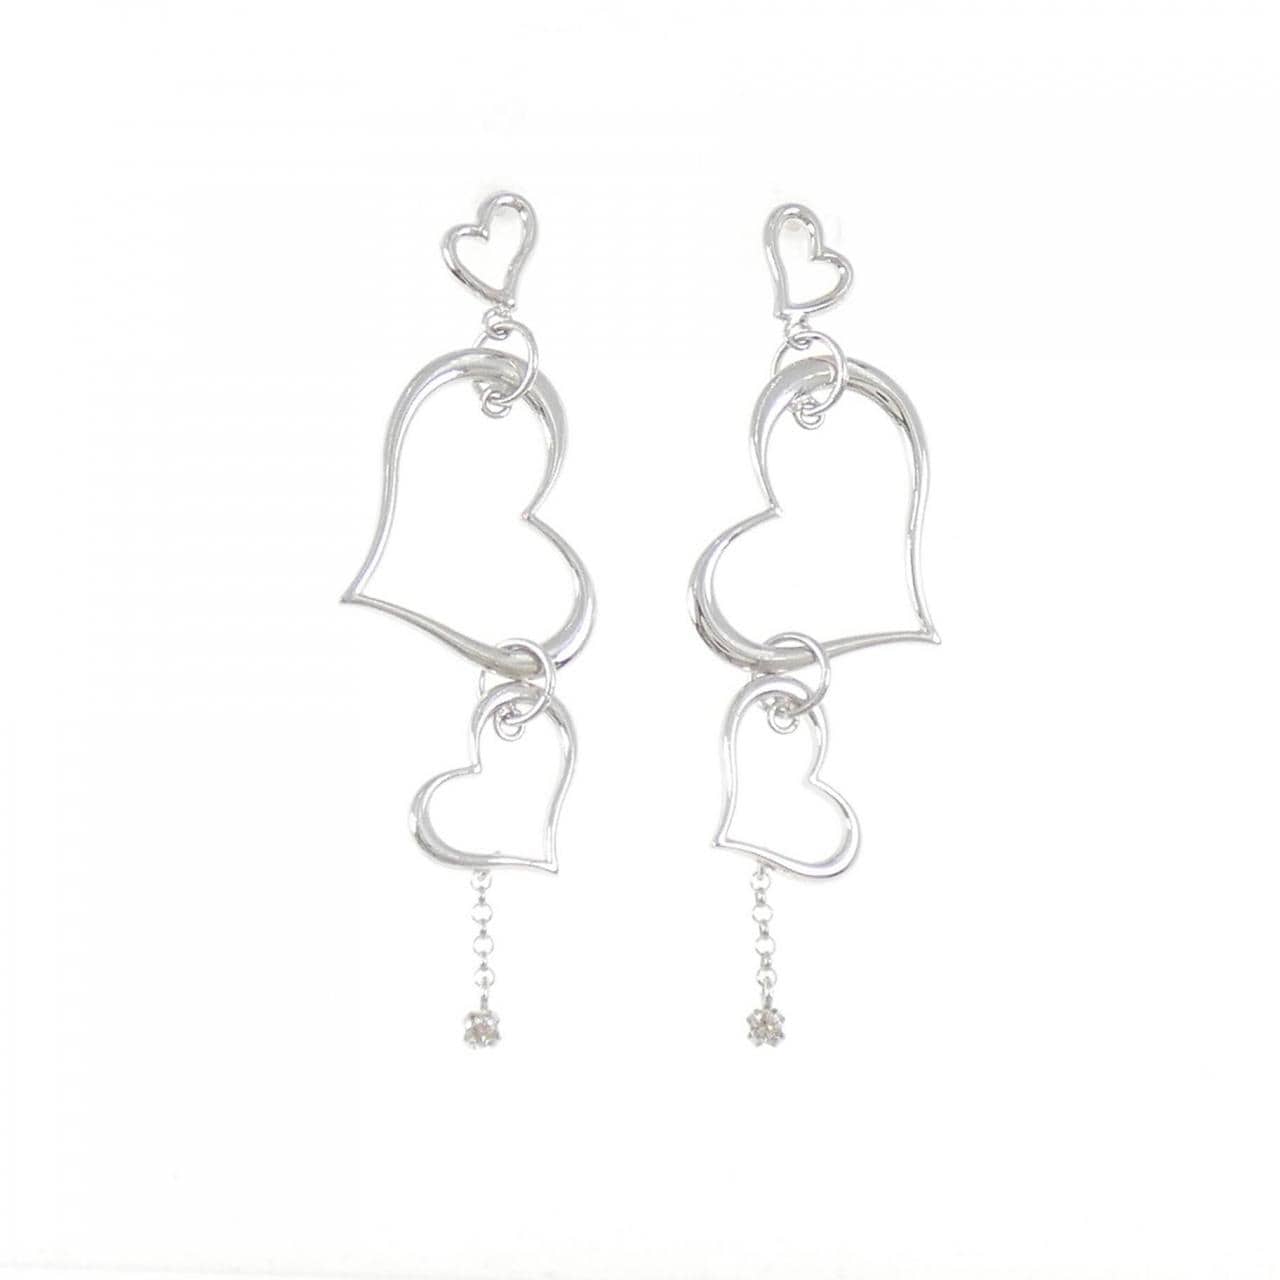 K18WG heart Diamond earrings 0.02CT